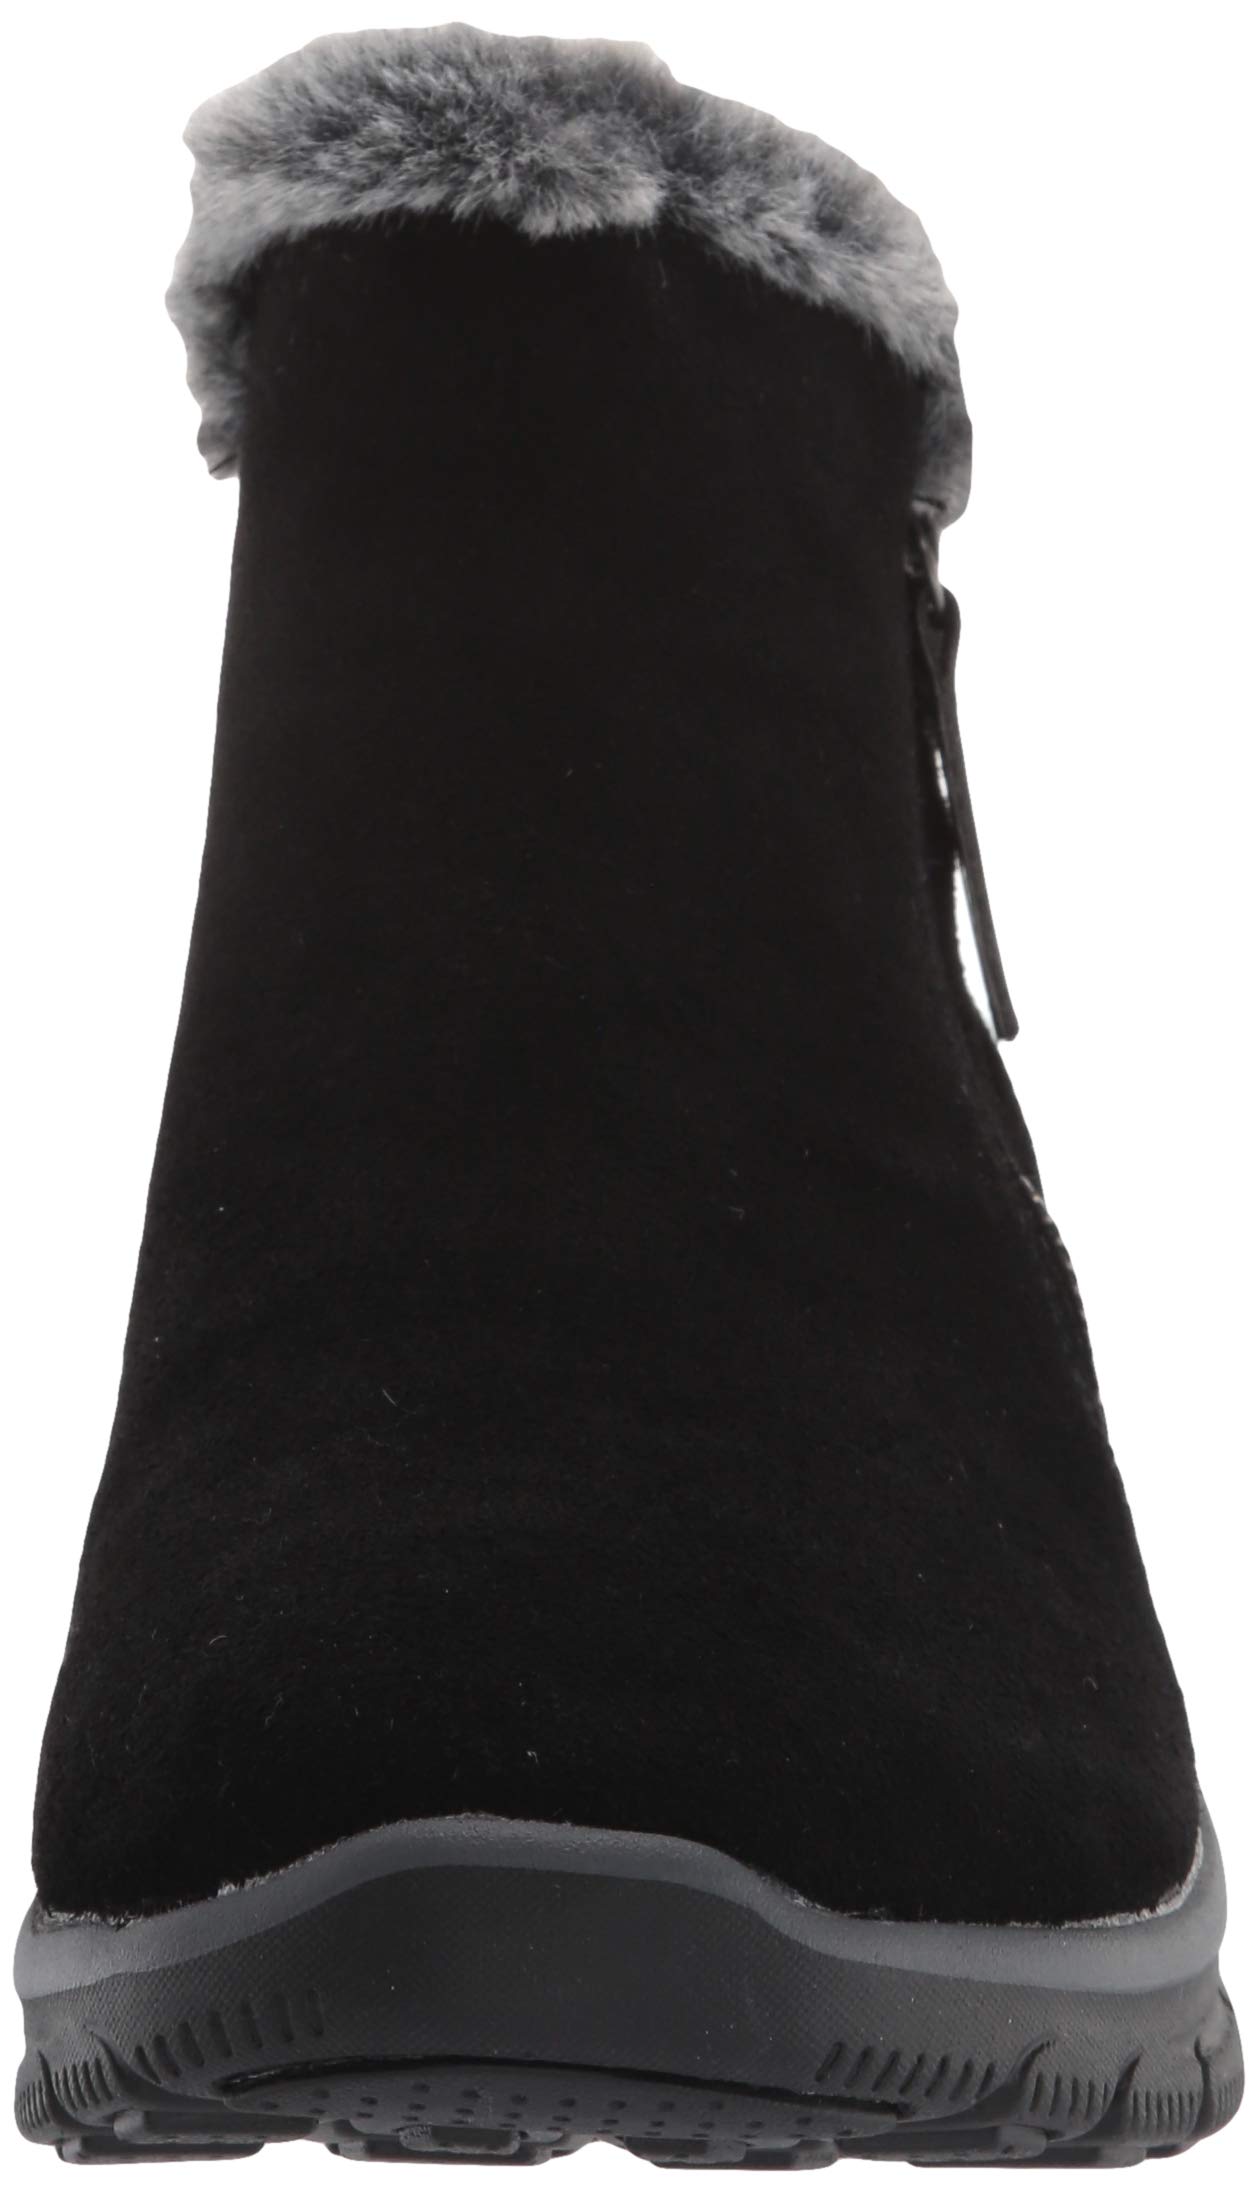 Skechers Women's Zip Bootie Fashion Boot